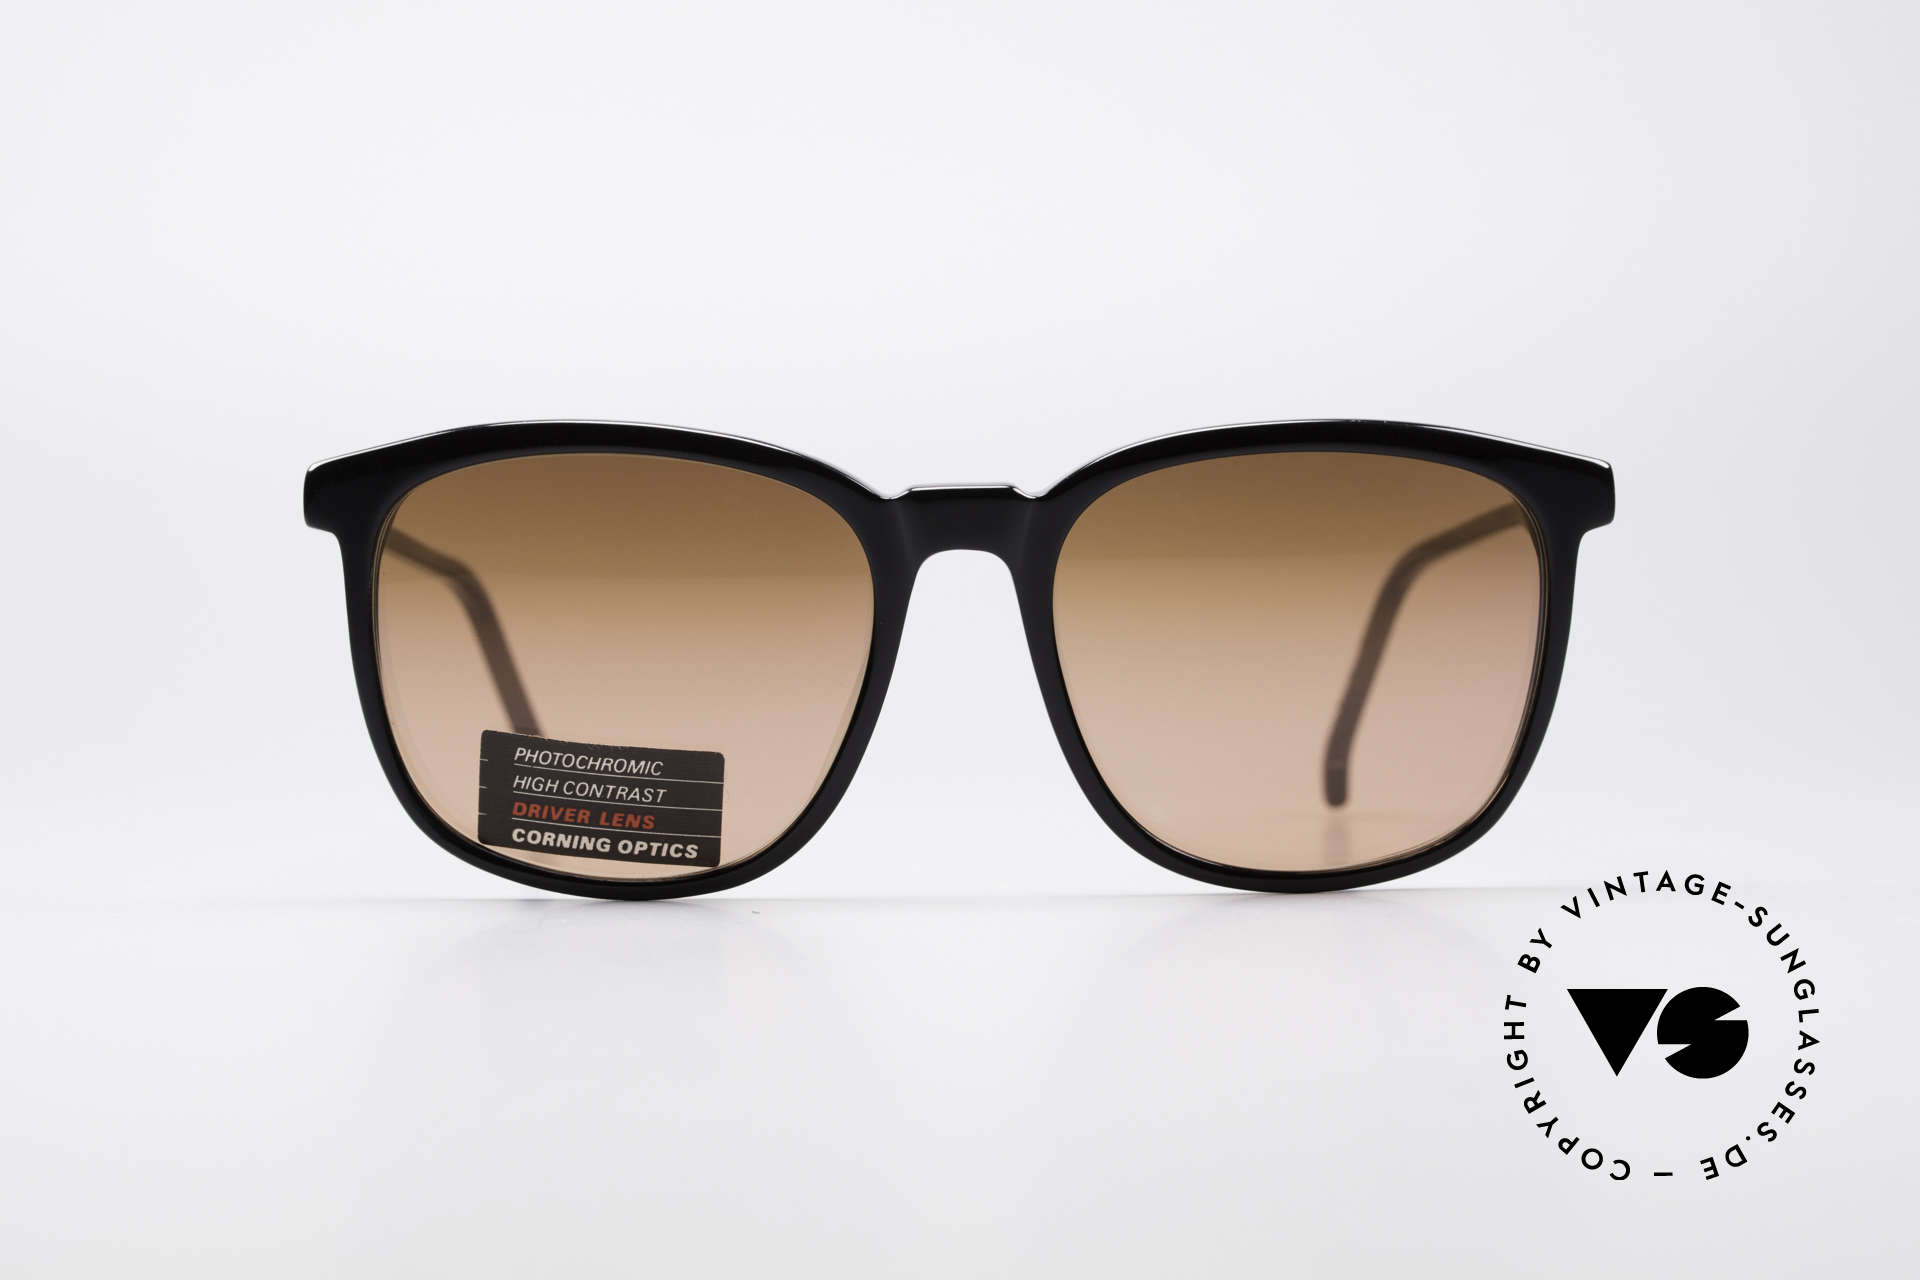 Serengeti Drivers 5343 Autofahrer Brille, kratzfeste Gläser eigens zum Auto fahren entwickelt, Passend für Herren und Damen